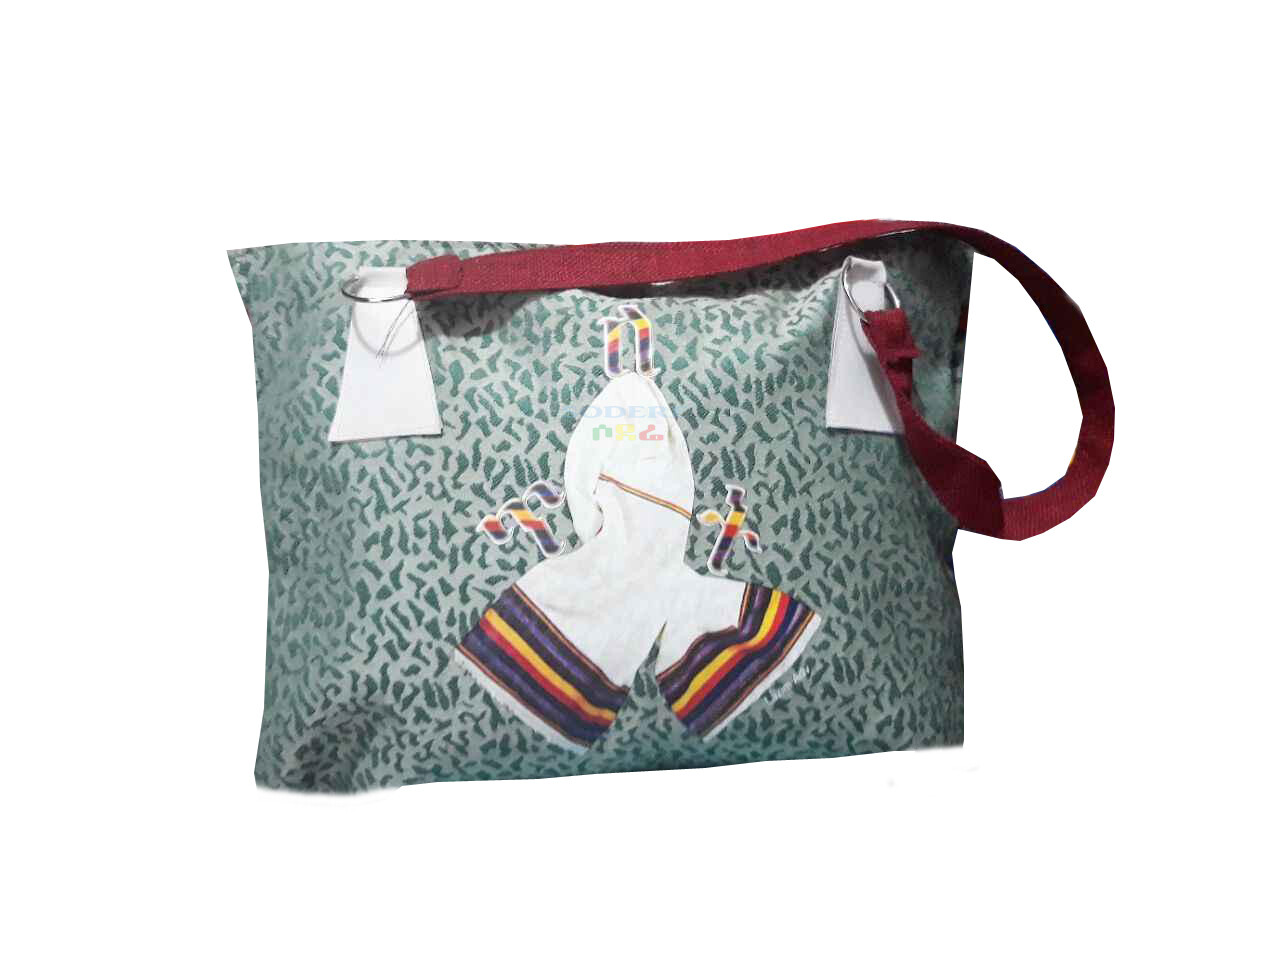 በባህላዊ የጎን ቦርሳ Traditional Shoulder Bag